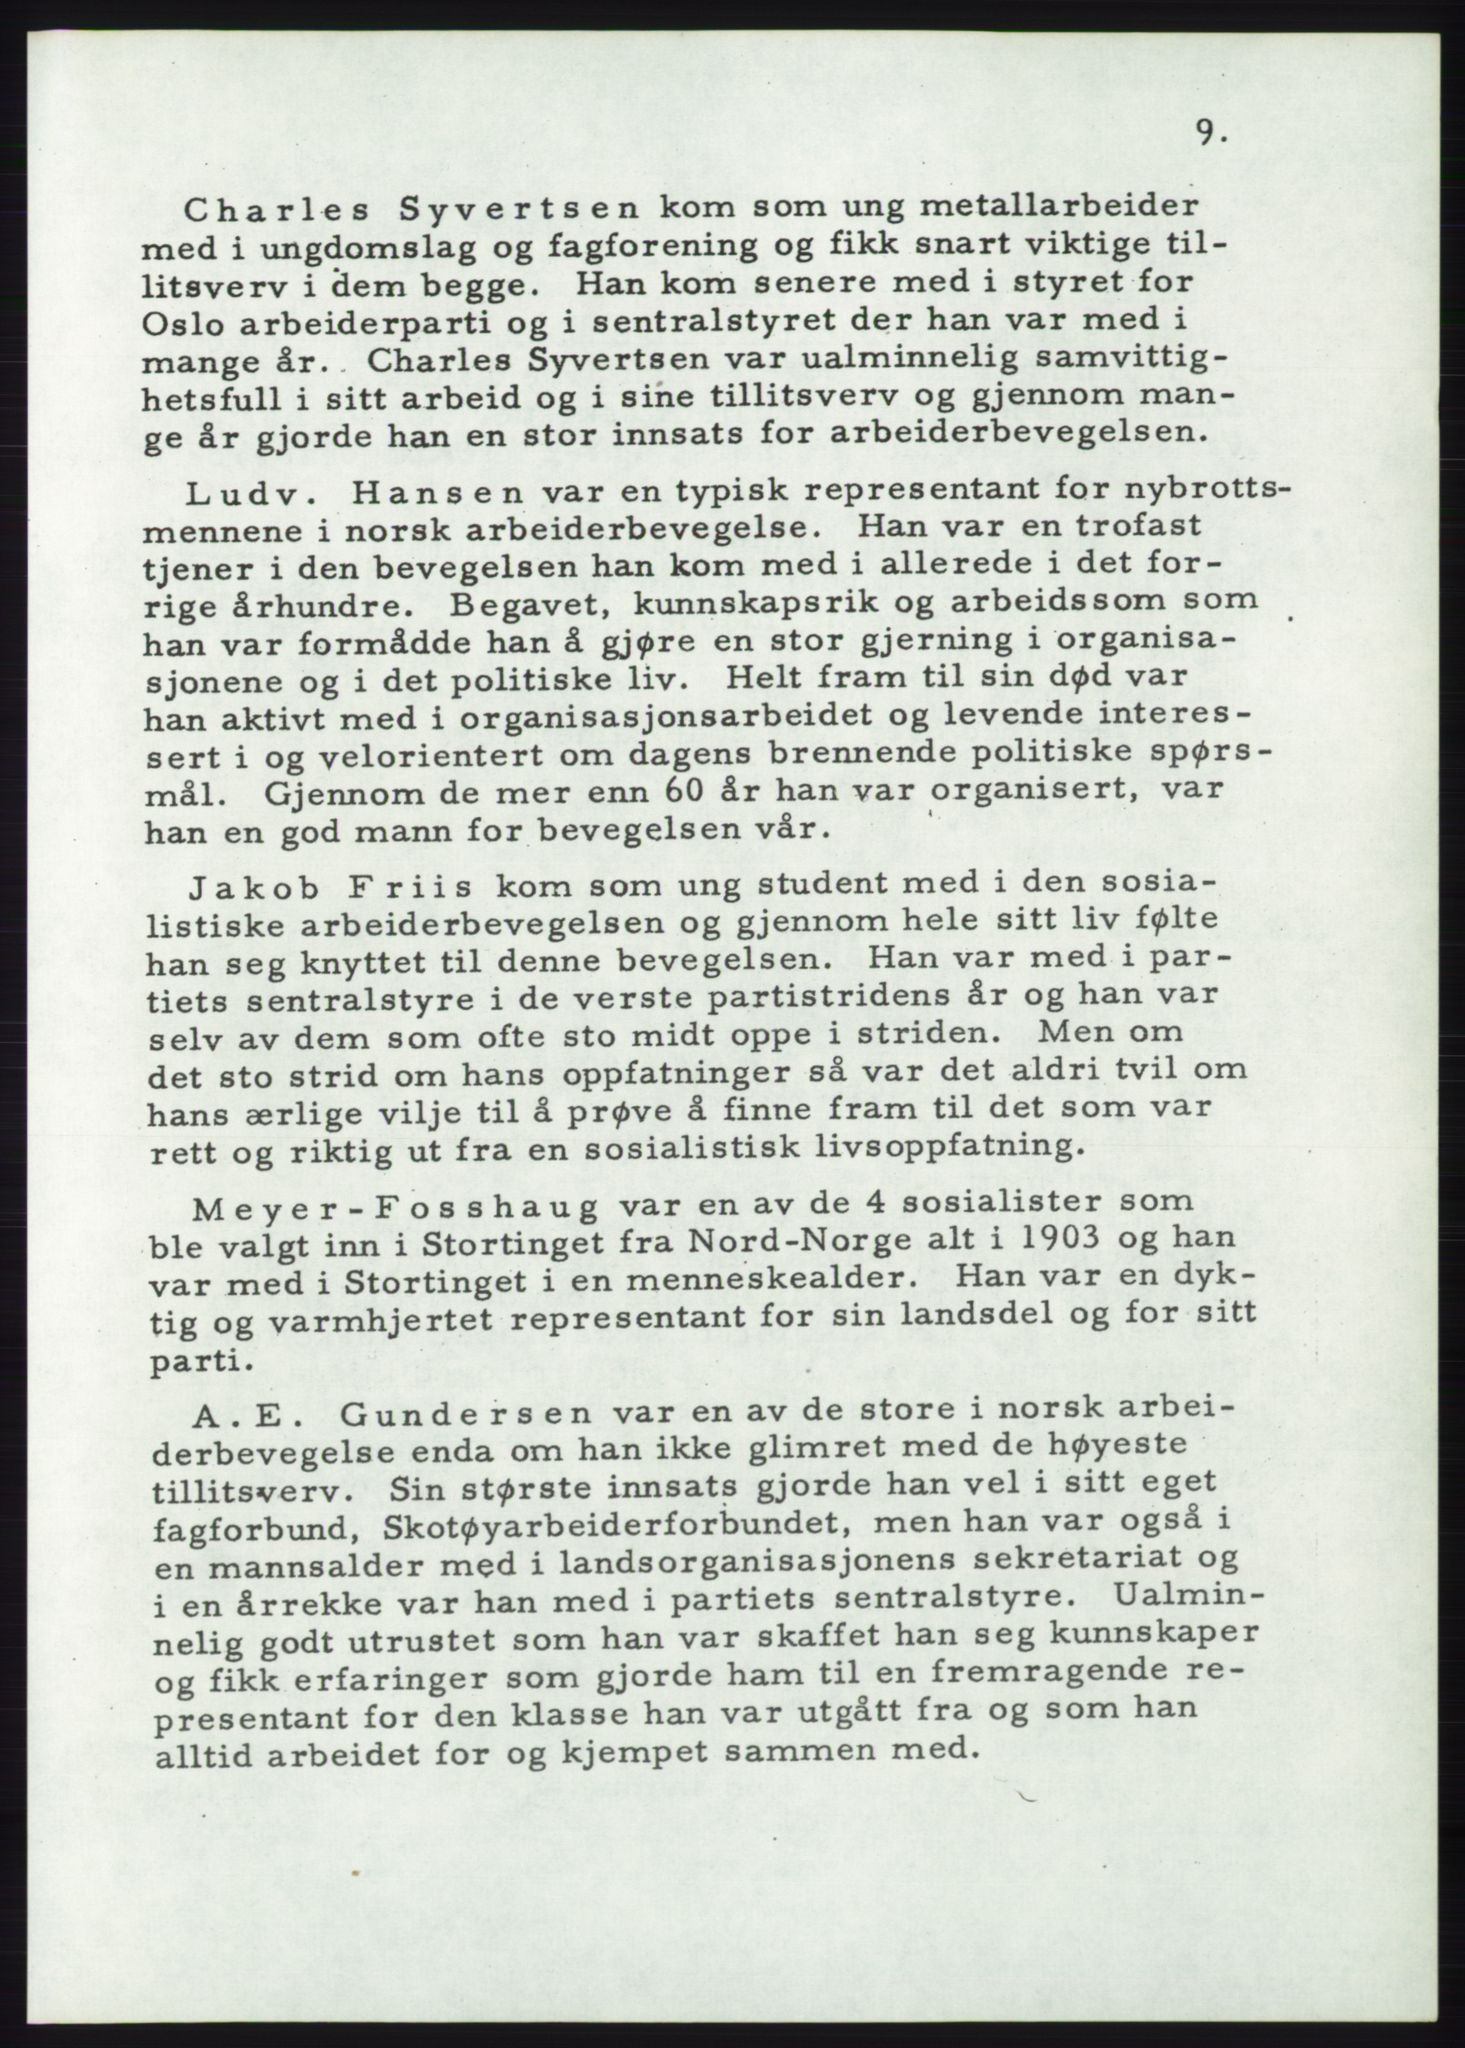 Det norske Arbeiderparti - publikasjoner, AAB/-/-/-: Protokoll over forhandlingene på det 36. ordinære landsmøte 30.-31. mai og 1. juni 1957 i Oslo, 1957, p. 9